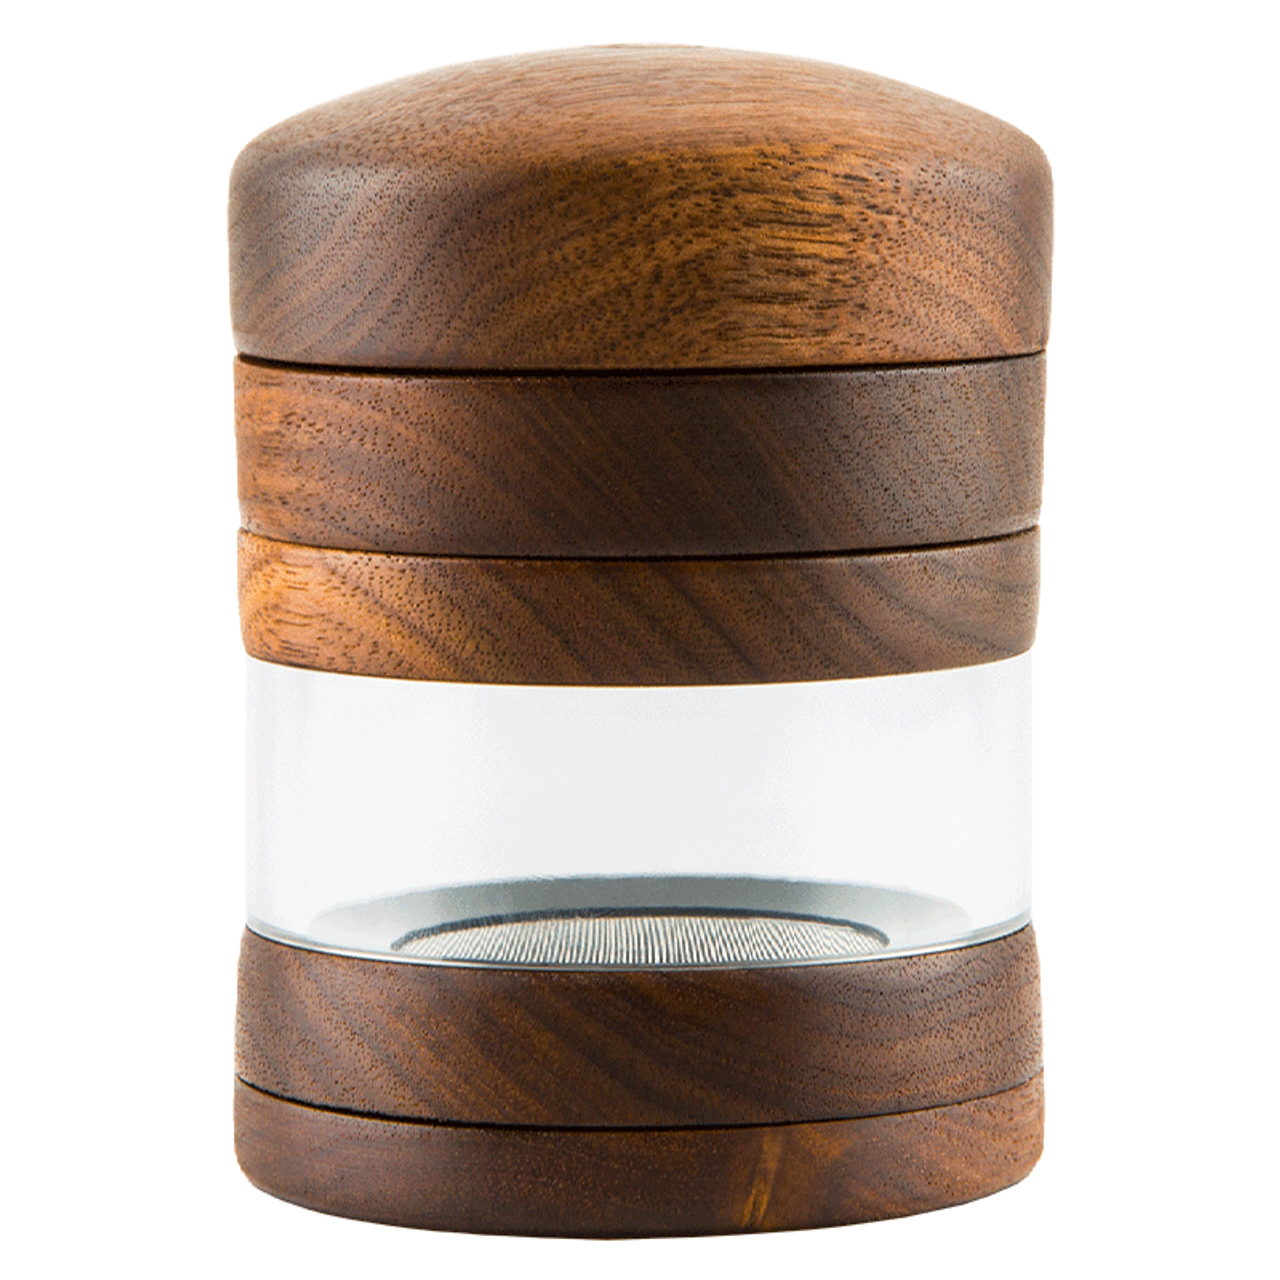 Large Wooden Grinder Jar Marley Natural